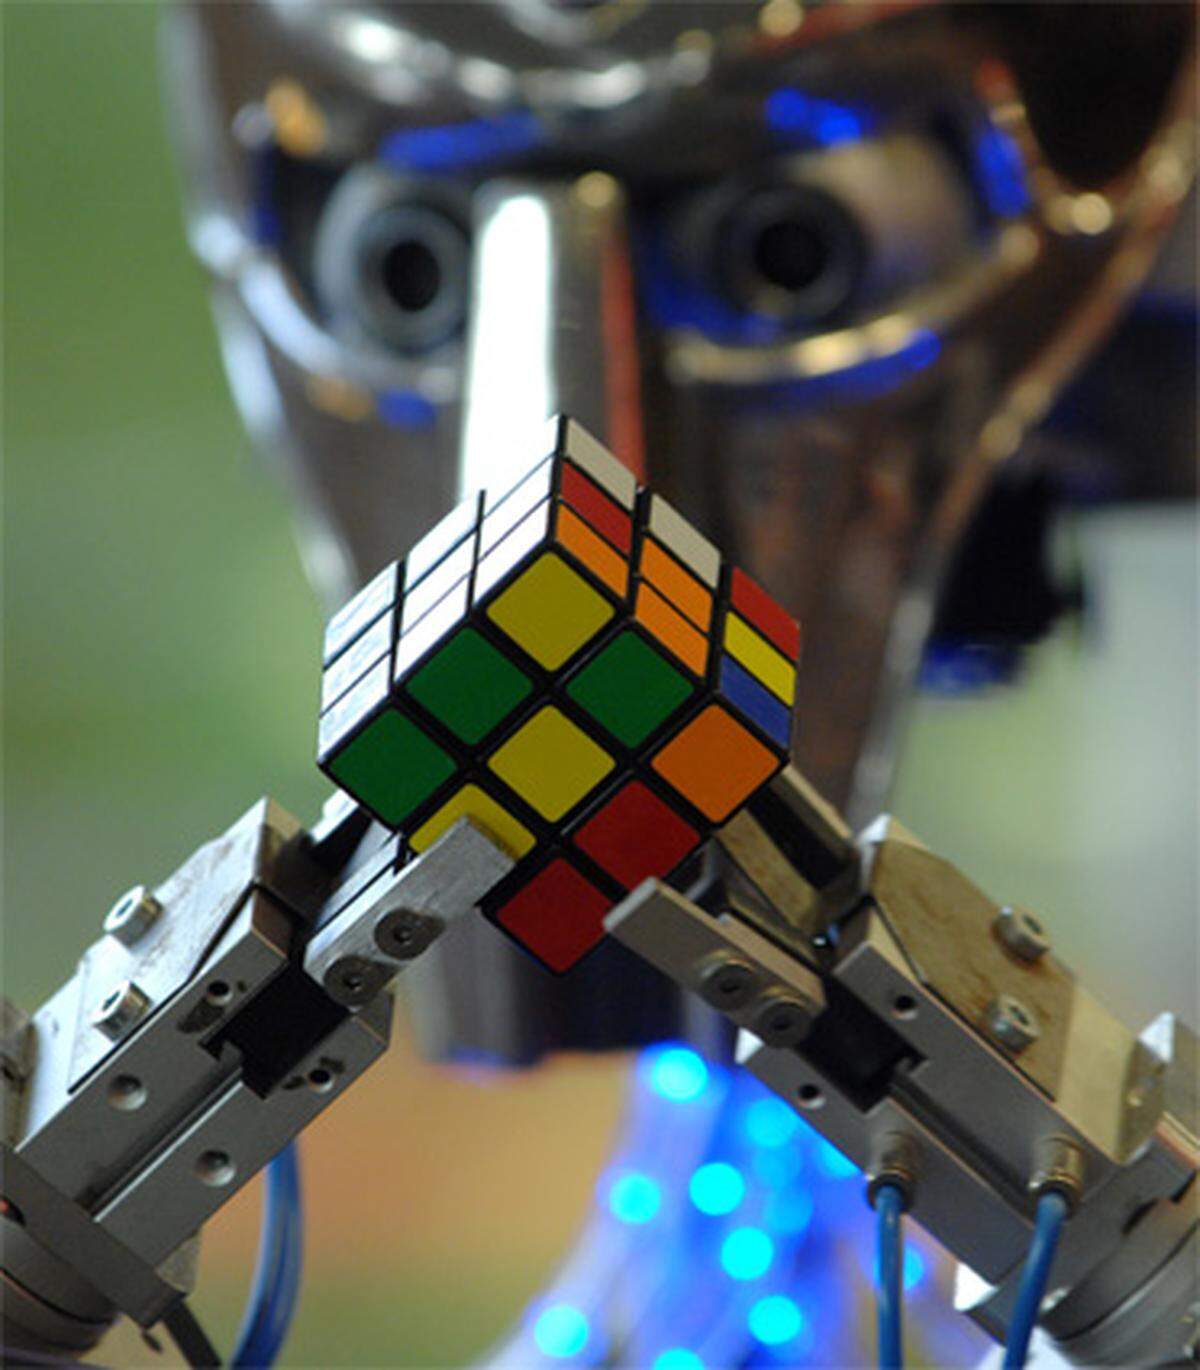 Der Cubinator versucht den beliebten Rubik-Würfel zu lösen. Seine beste Zeit bisher liegt bei 26 Sekunden. In einem YouTube-Video demonstriert der Roboter, wie es geht.